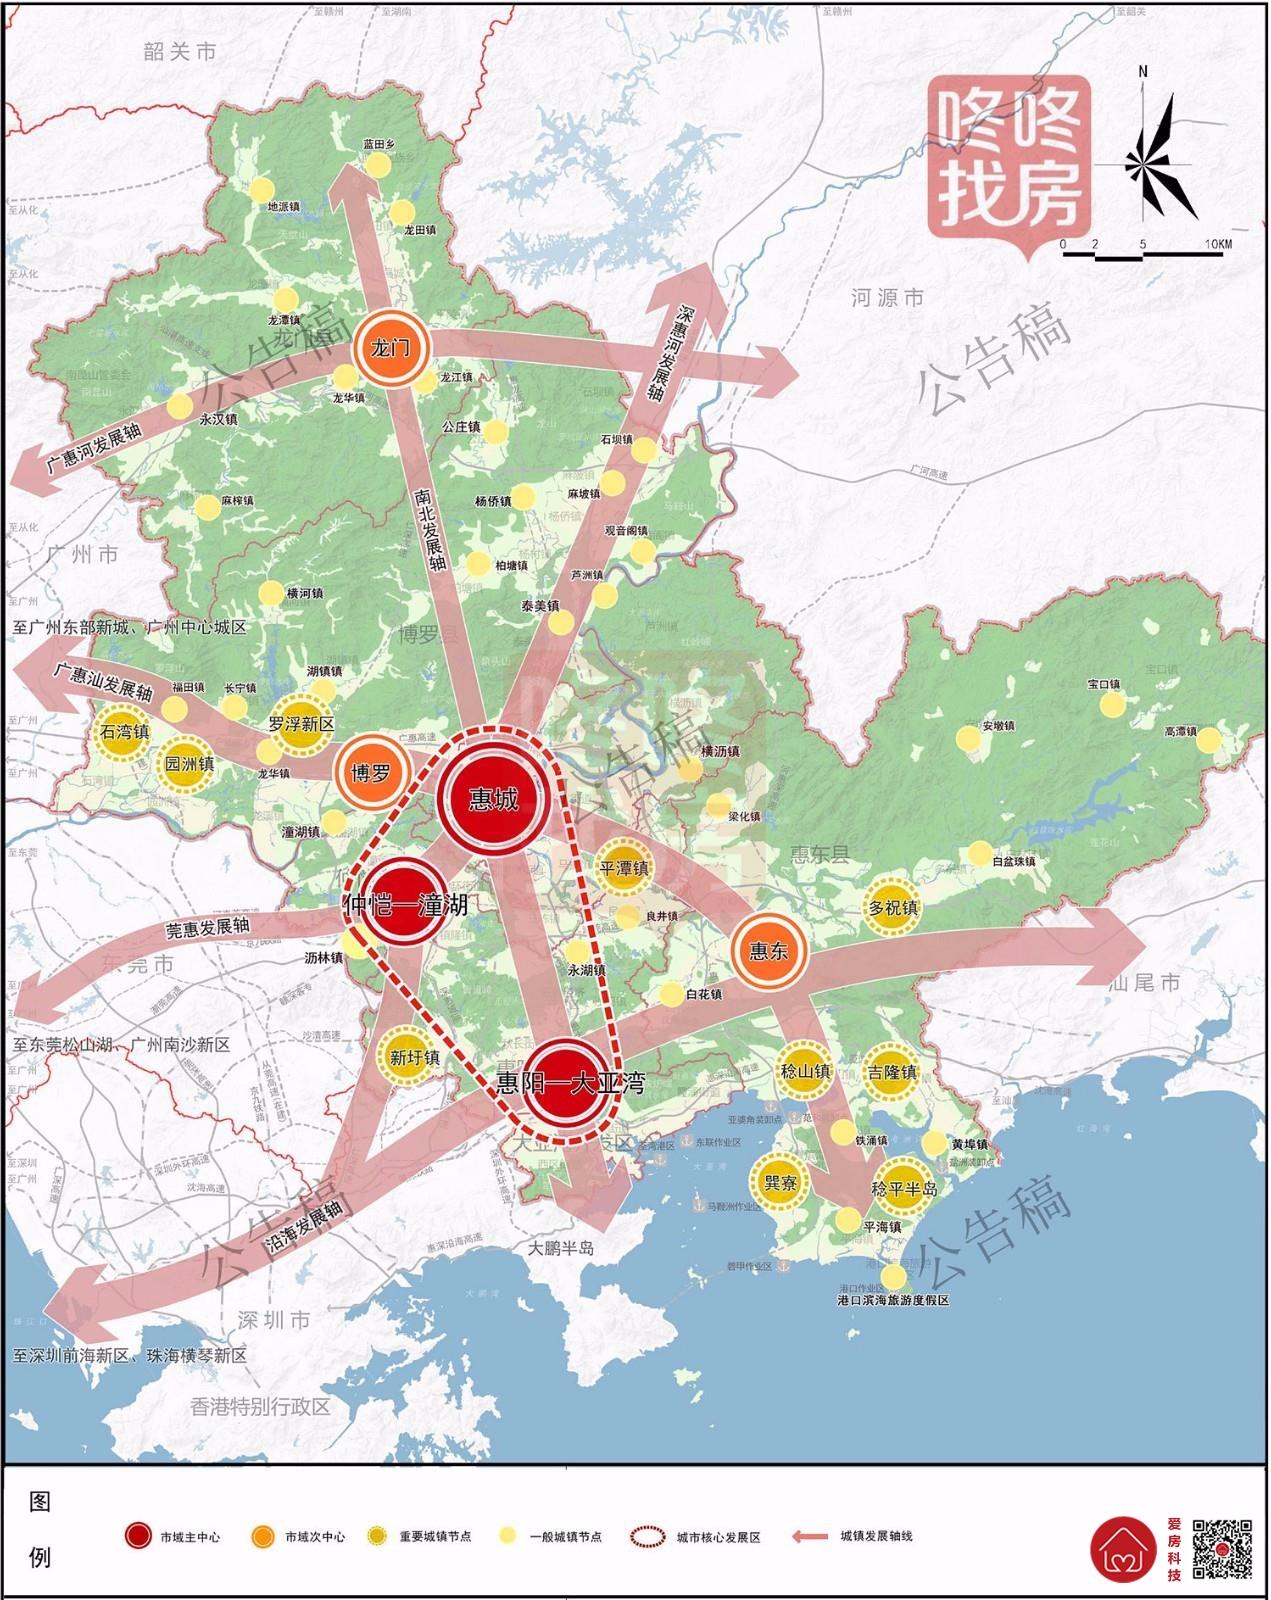 重磅规划!到2035惠州要建4条城际/10条市内轨道交通